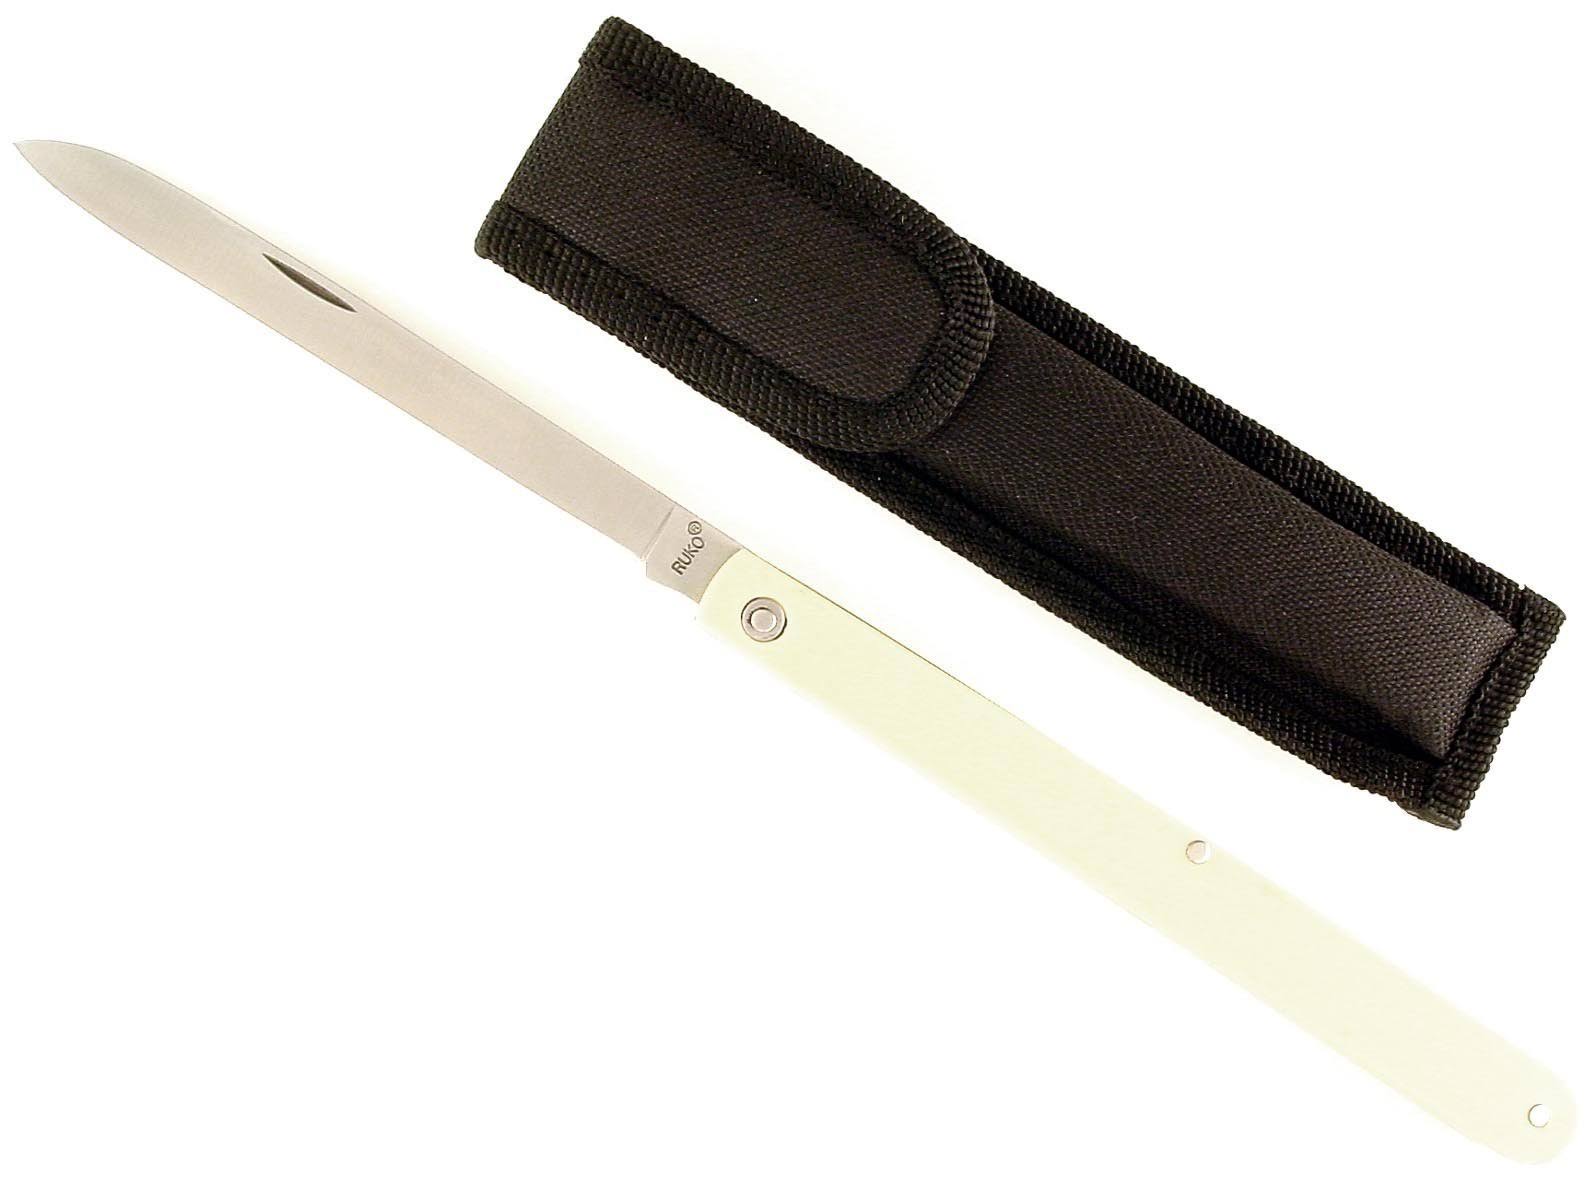 Ruko 4-1/4-Inch Blade Fruit Sampling Knife with Plain Edge Nylon